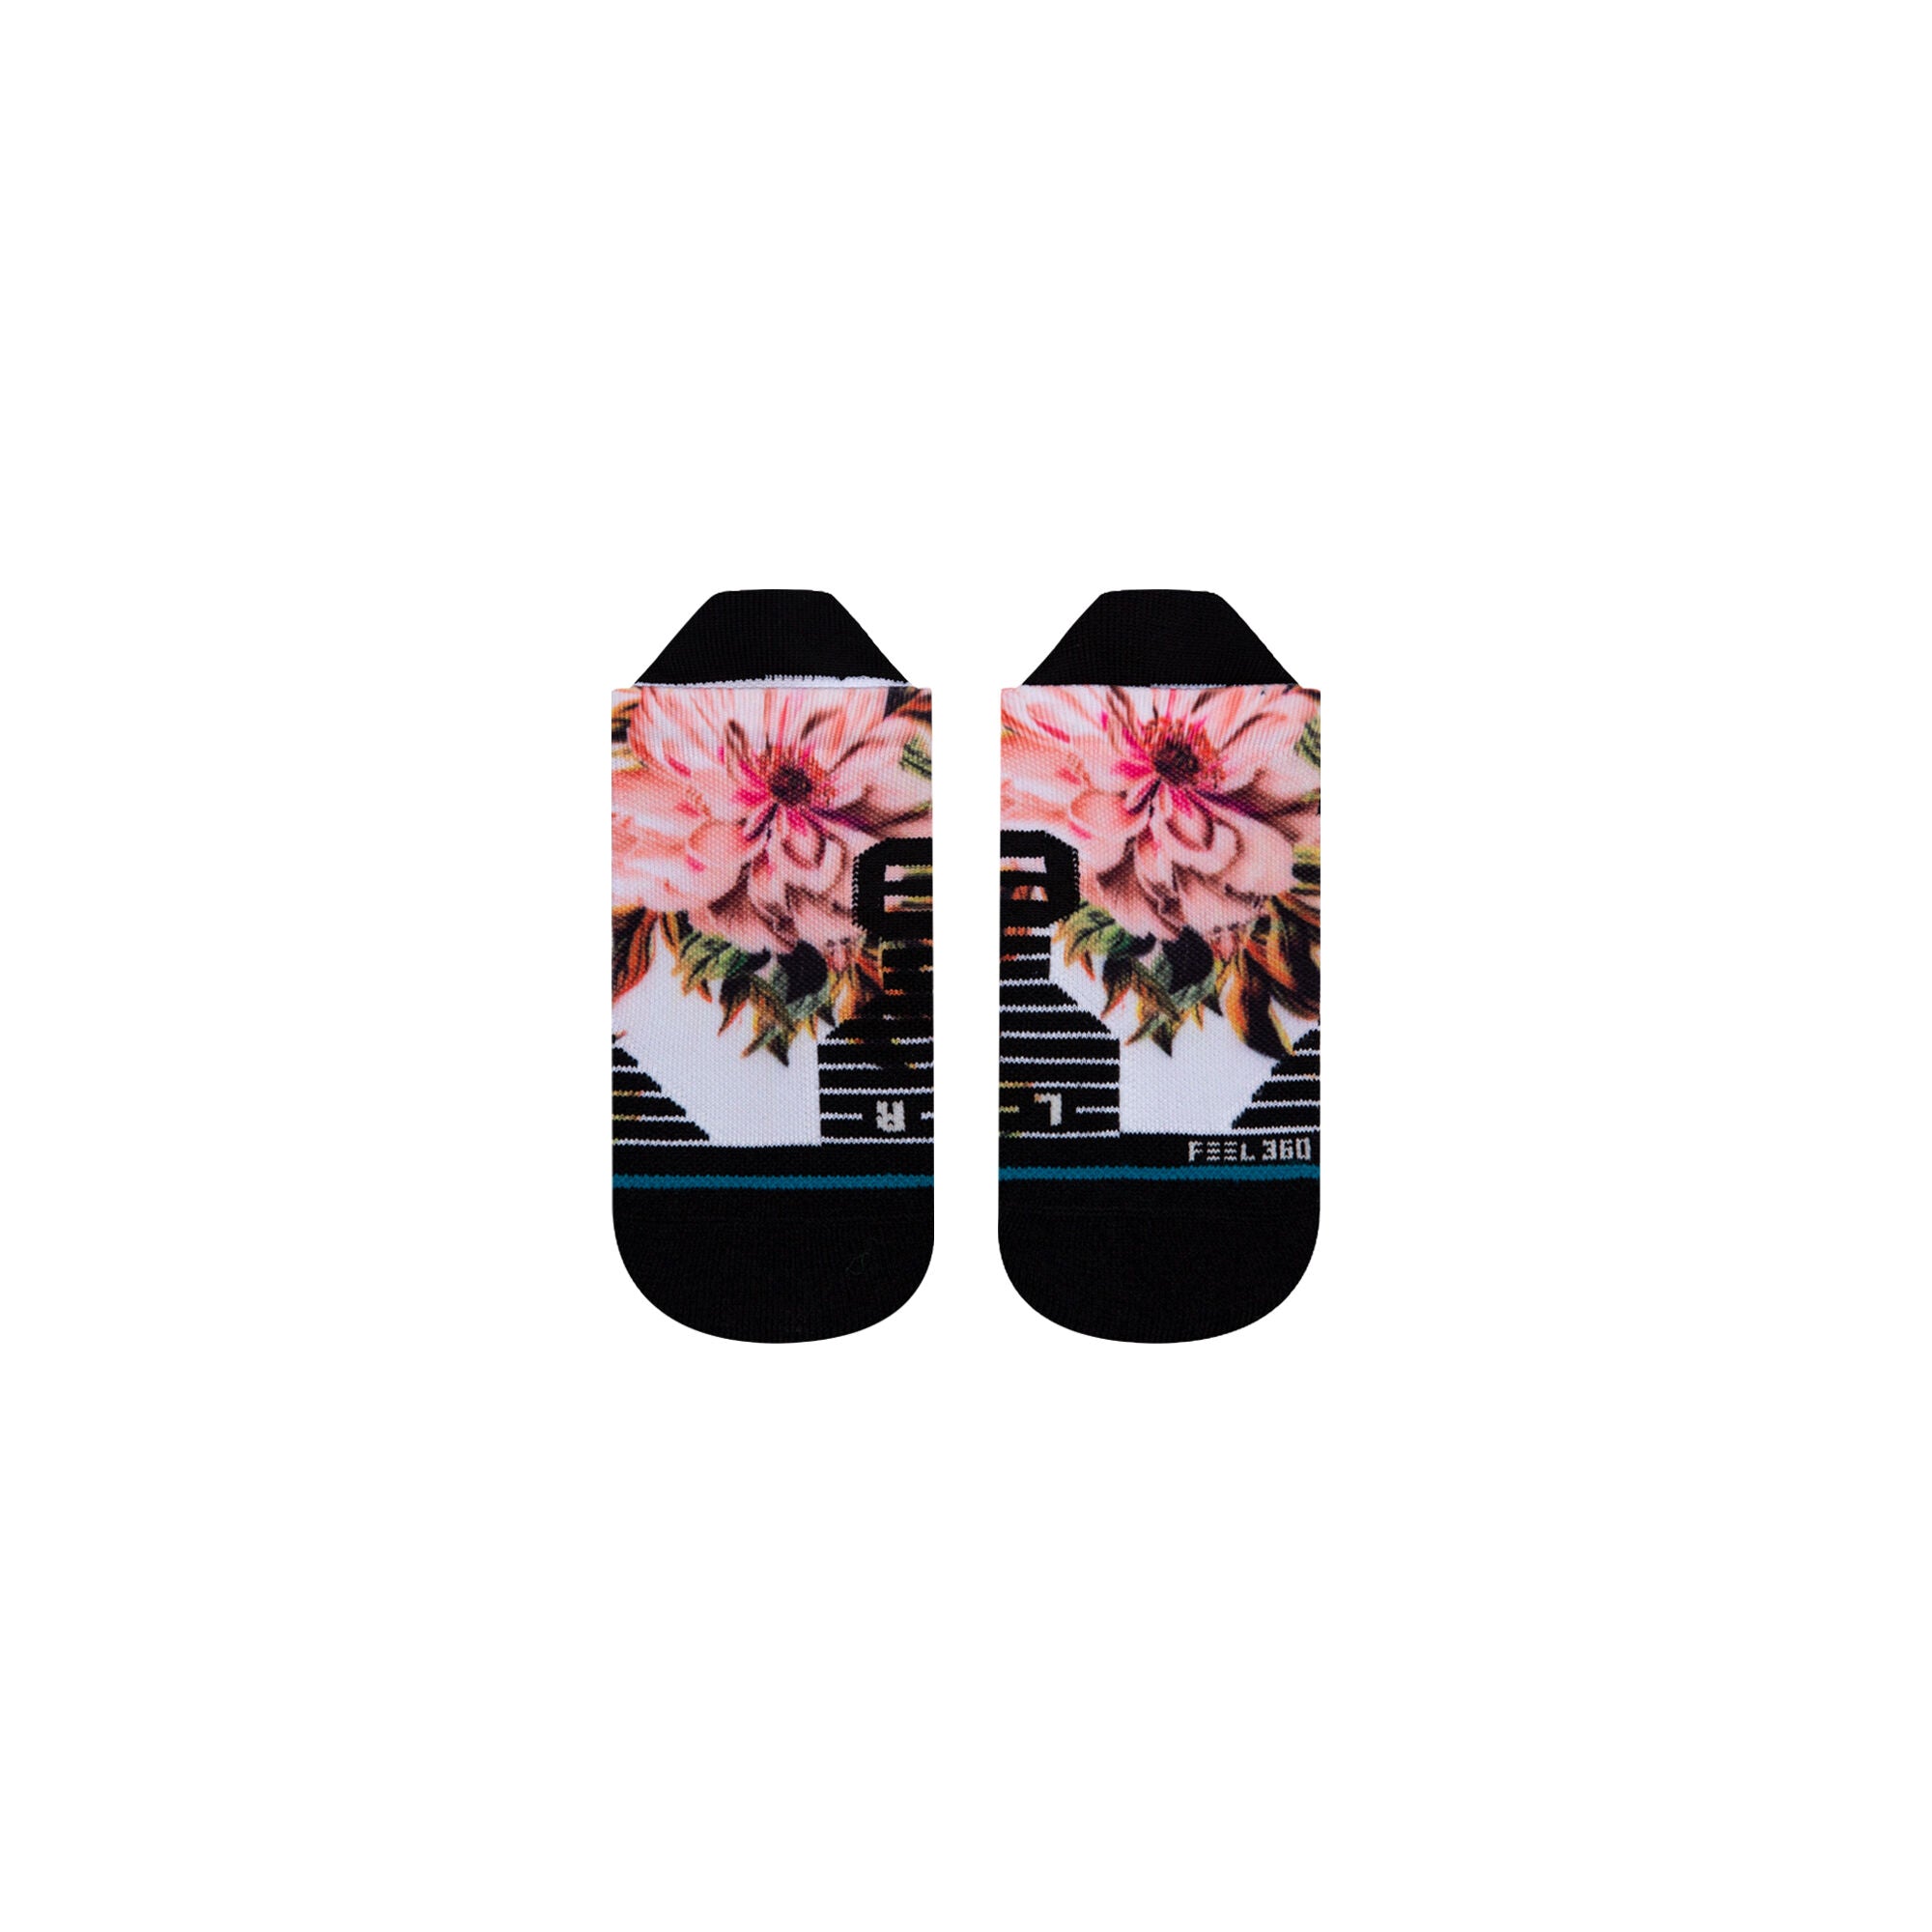 Floweret Socks